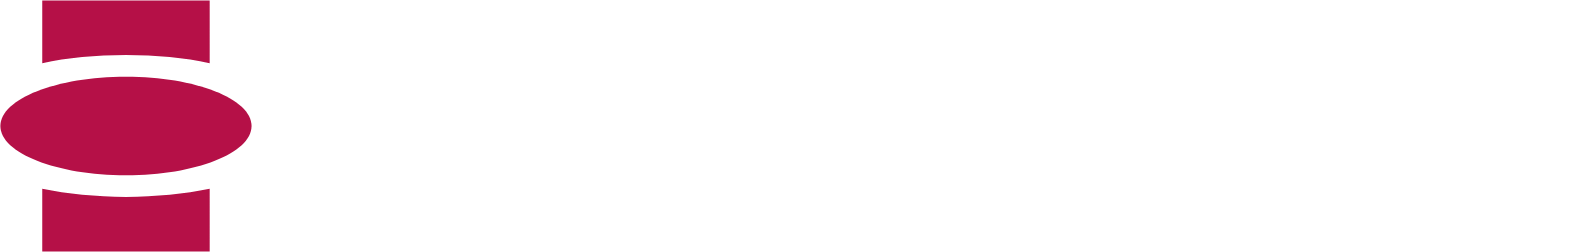 Eckert & Ziegler logo grand pour les fonds sombres (PNG transparent)